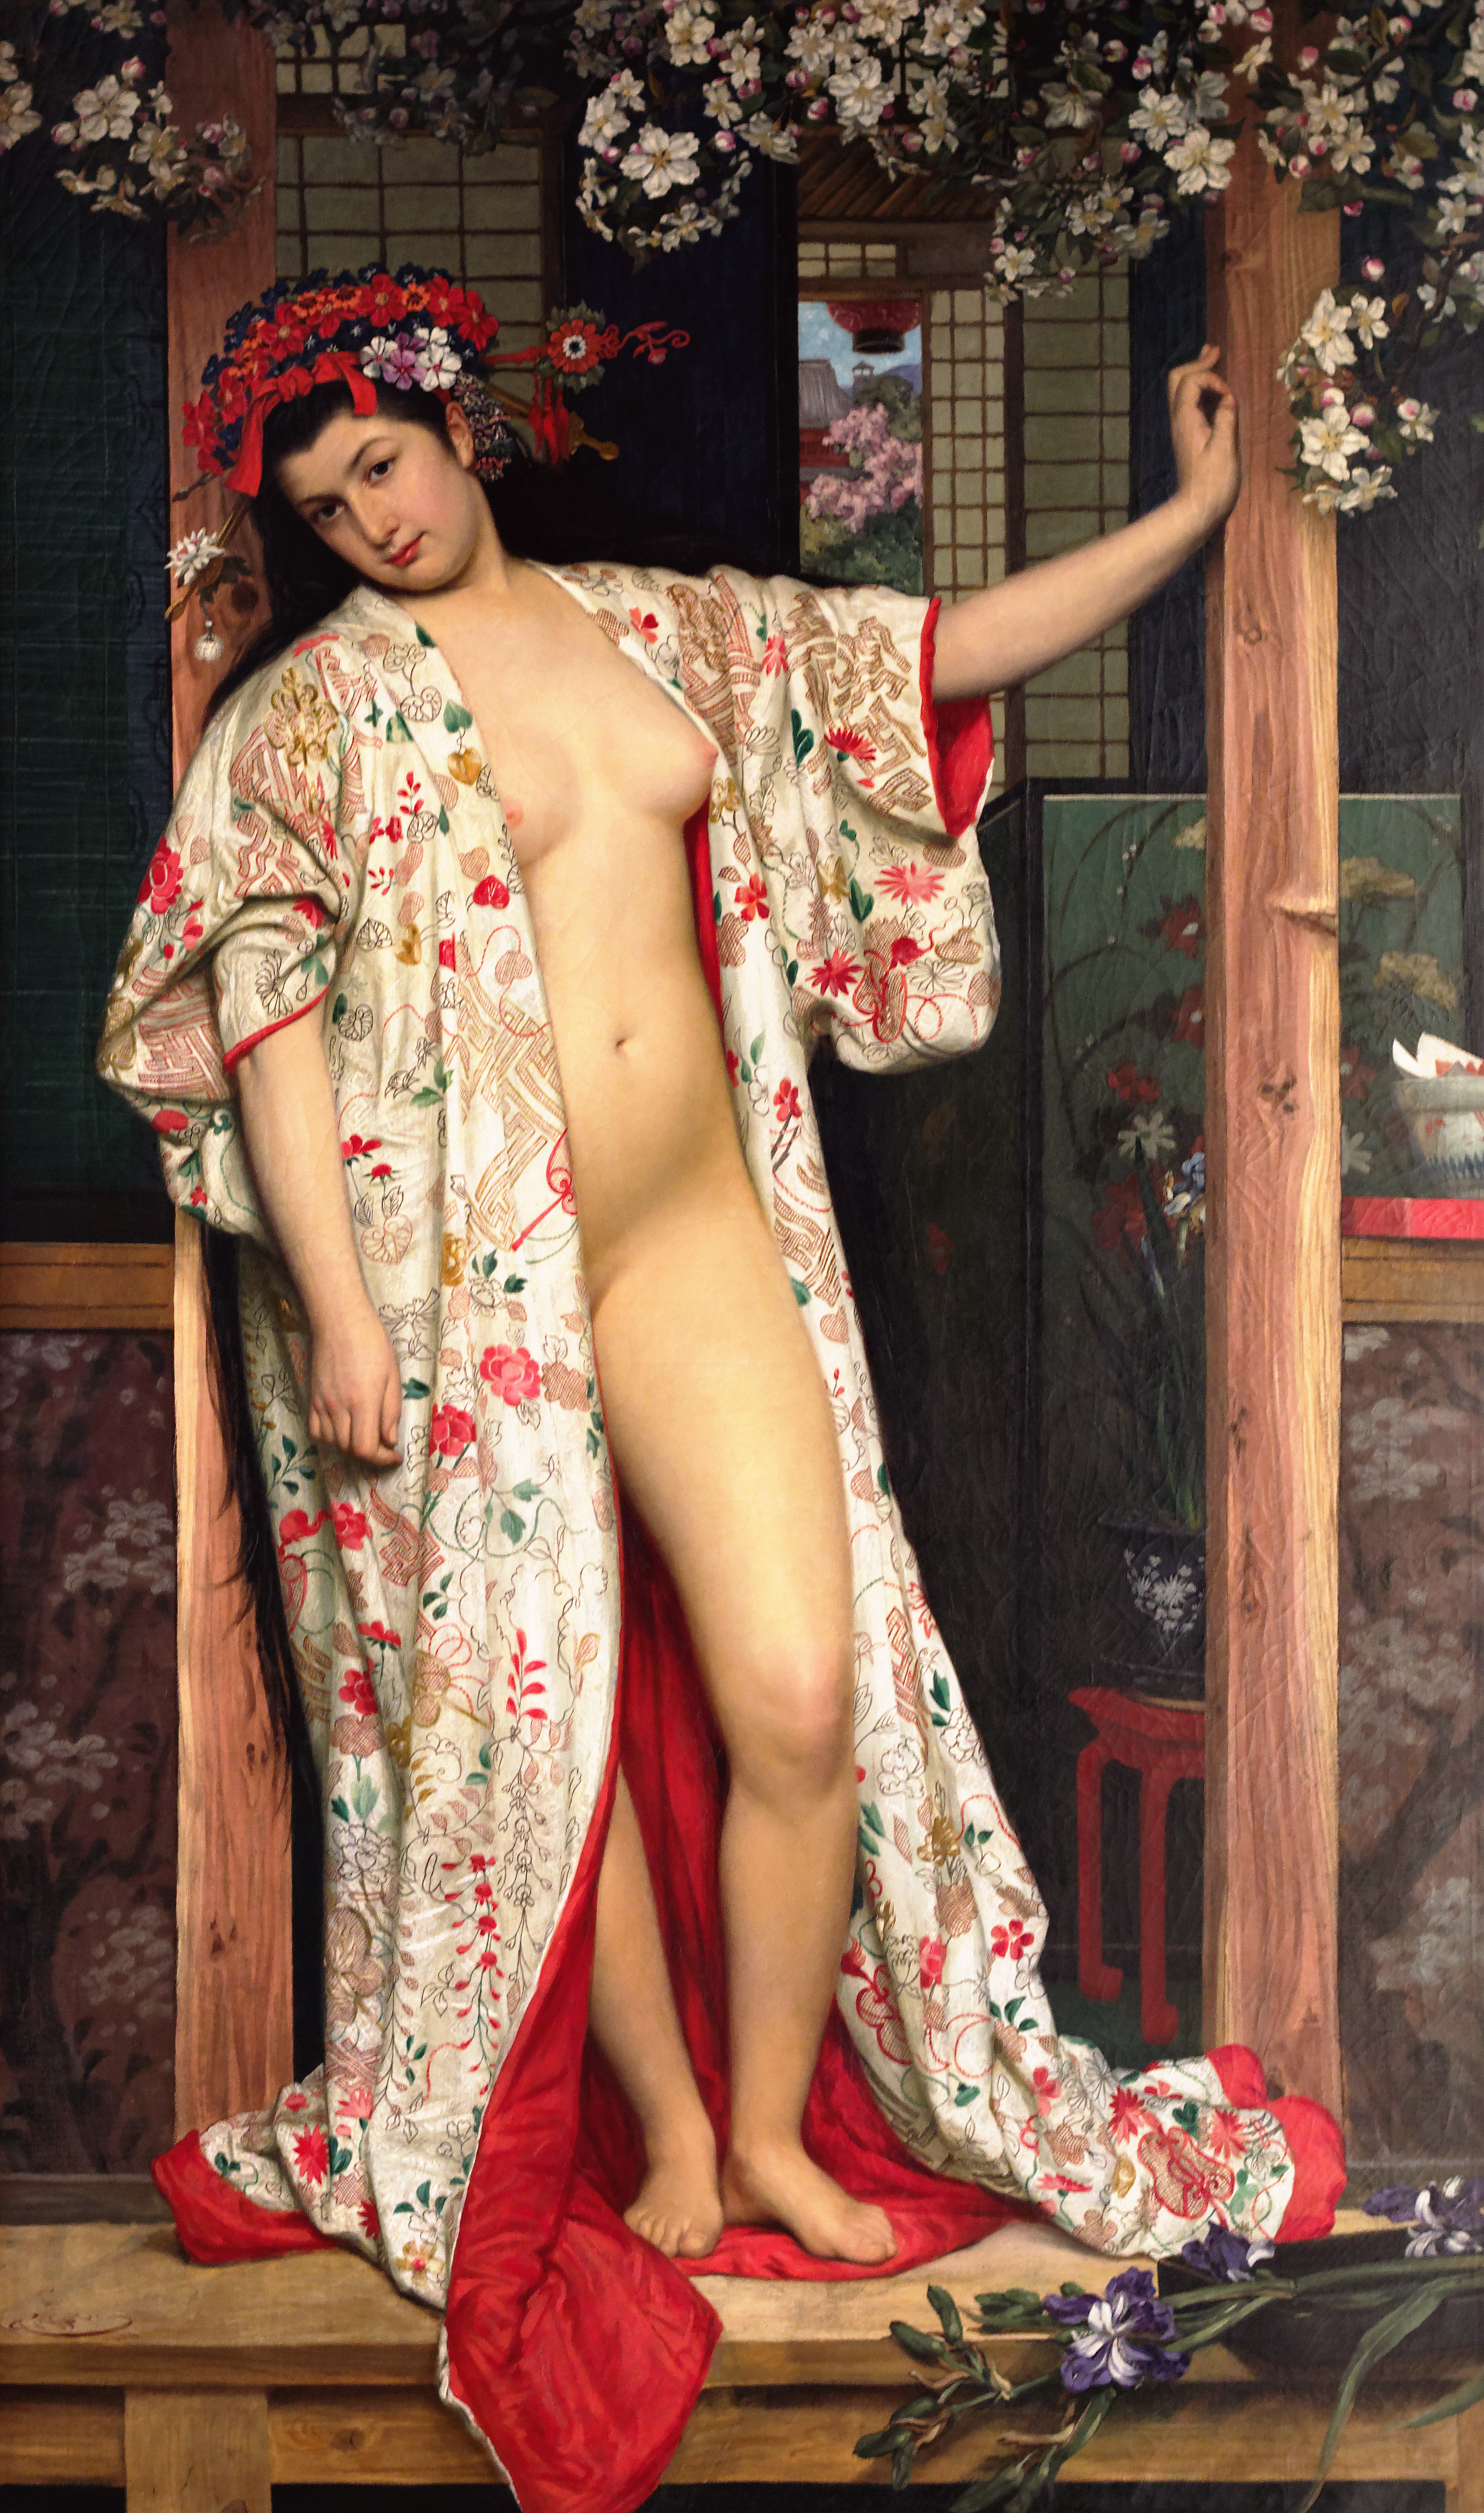 James Tissot, La Japonaise au bain (1864)